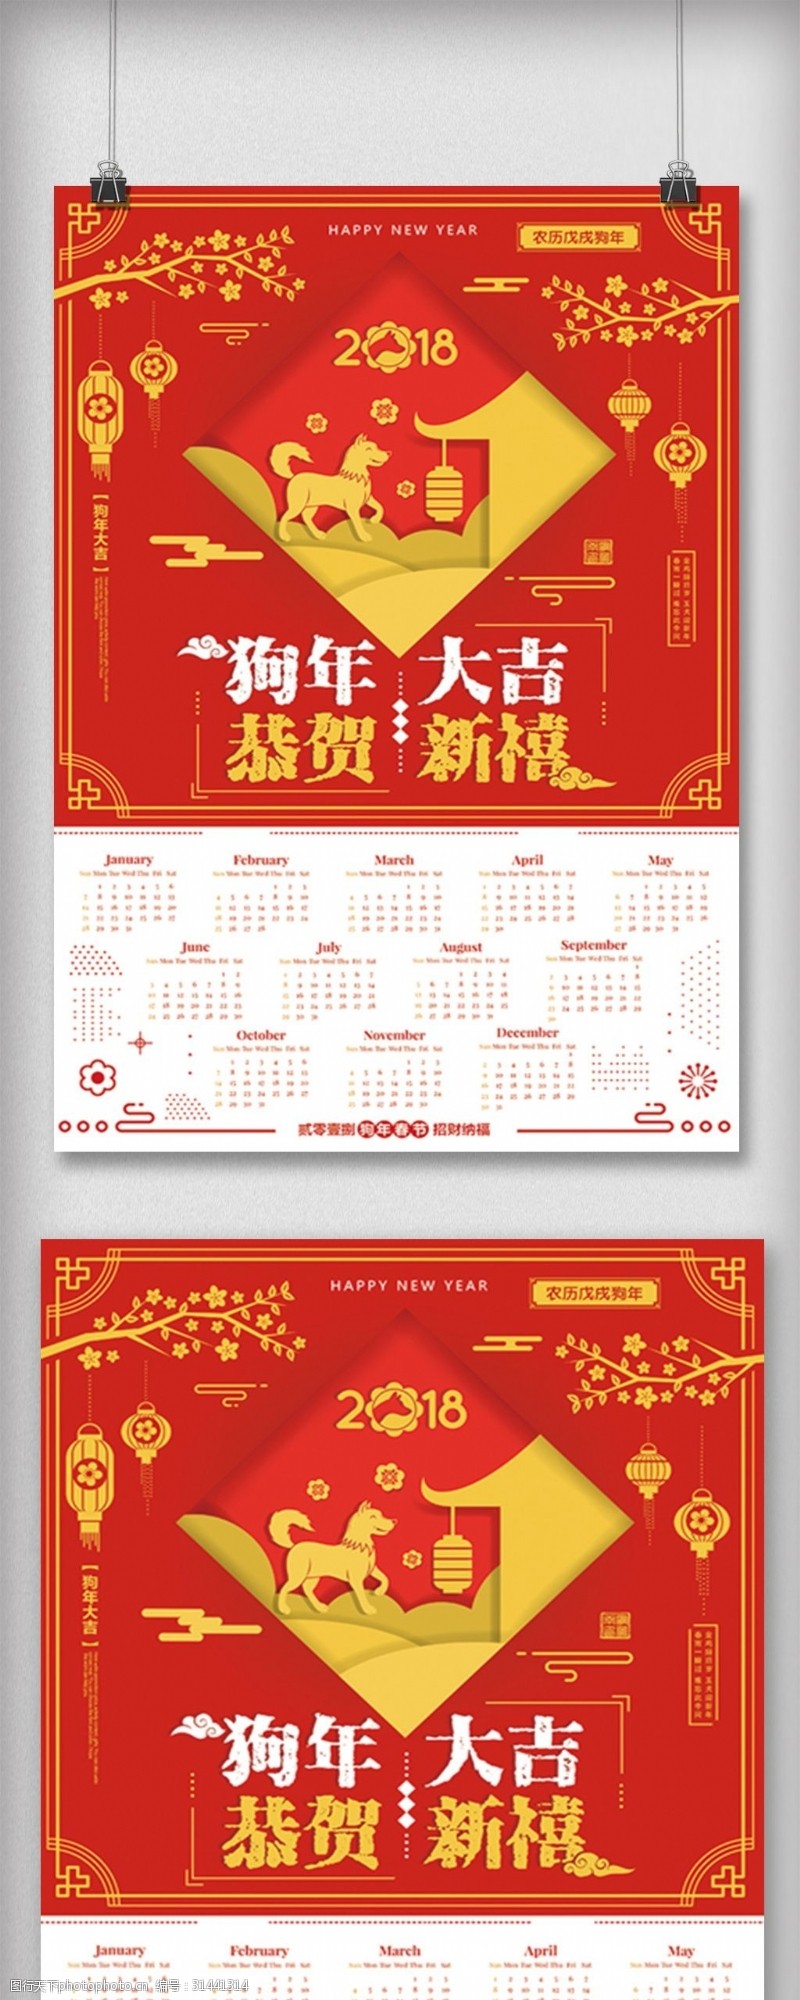 新年素材图片下载红色2018狗年迎春新年快乐海报